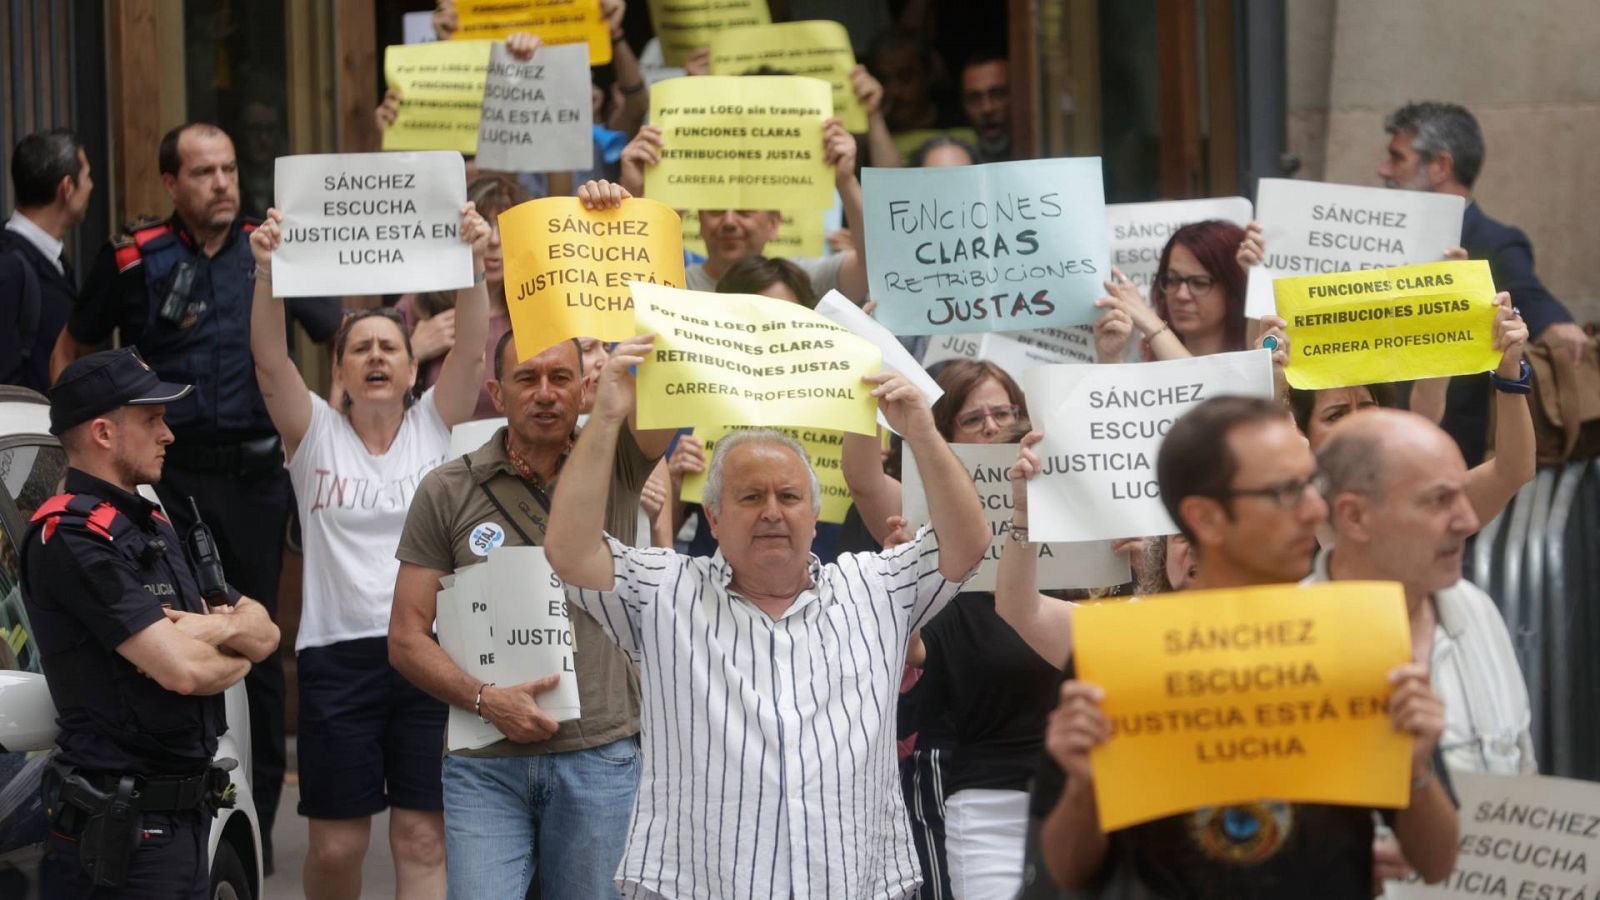 Los funcionarios de Justicia se encierran en sedes de varias ciudades: varios funcinarios de Justicia protestan ante la Audiencia de Barcelona